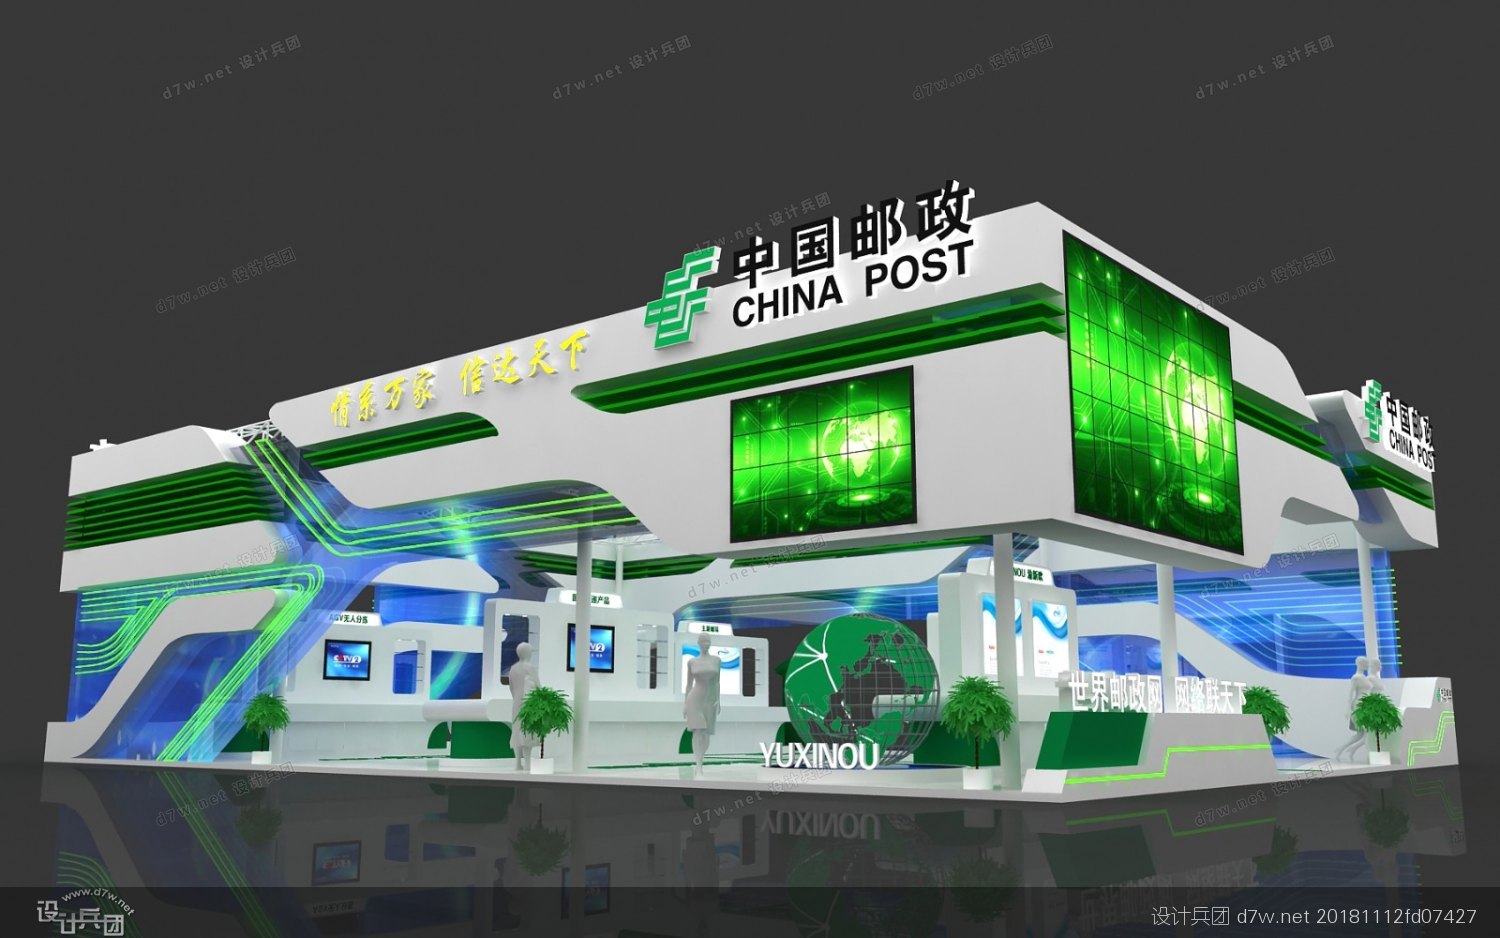 济南市邮政局三维模型图片